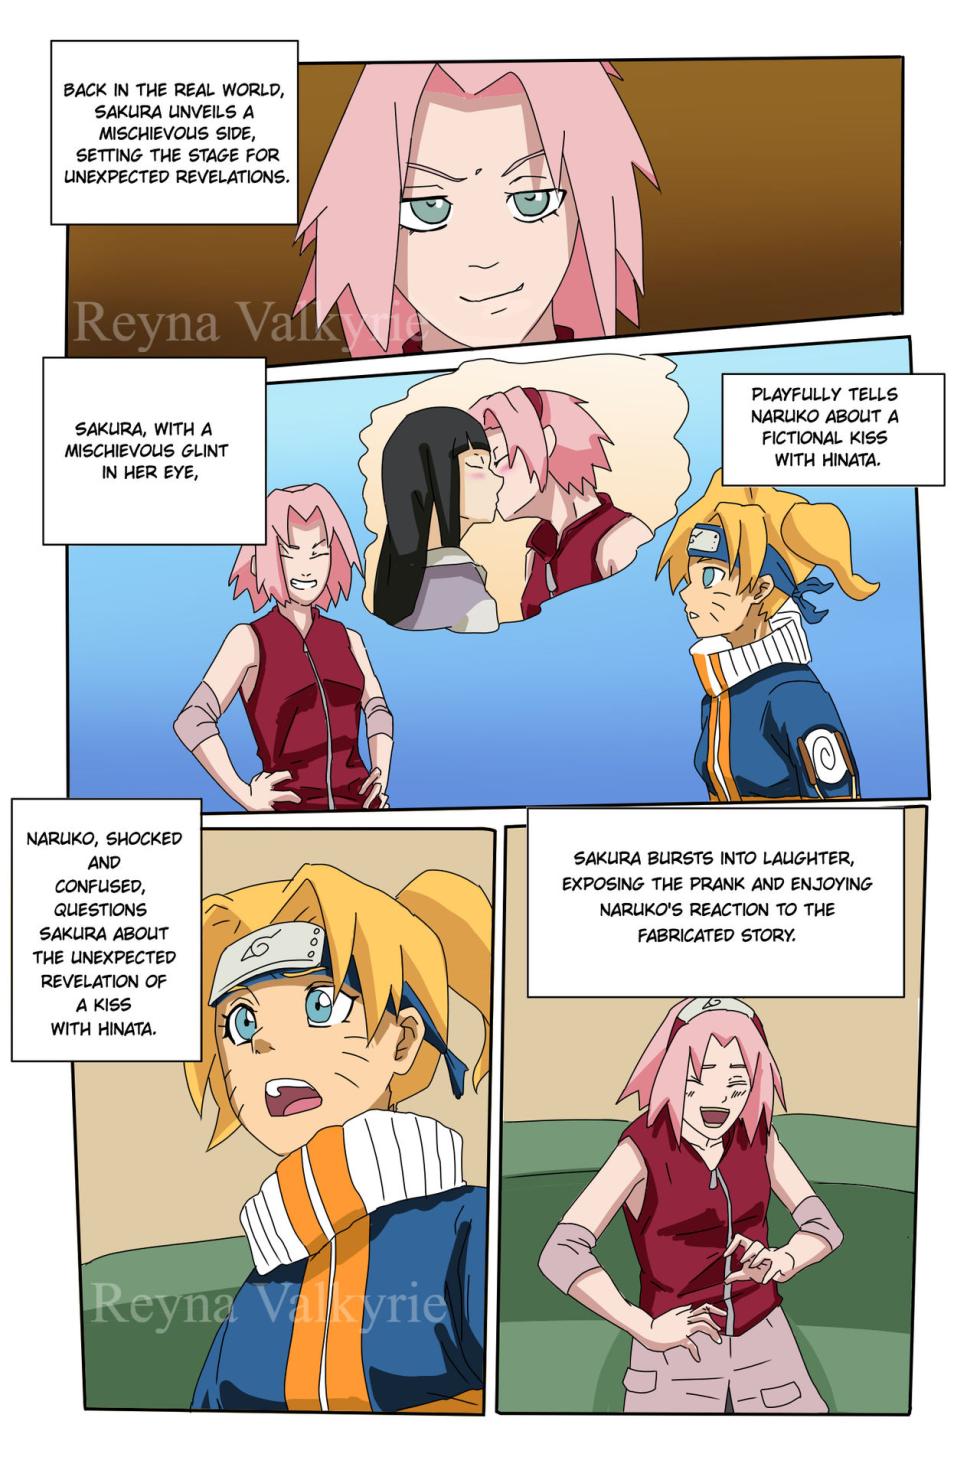 (Reynavalkyrie2)] NARU  (Naruto) - Page 3